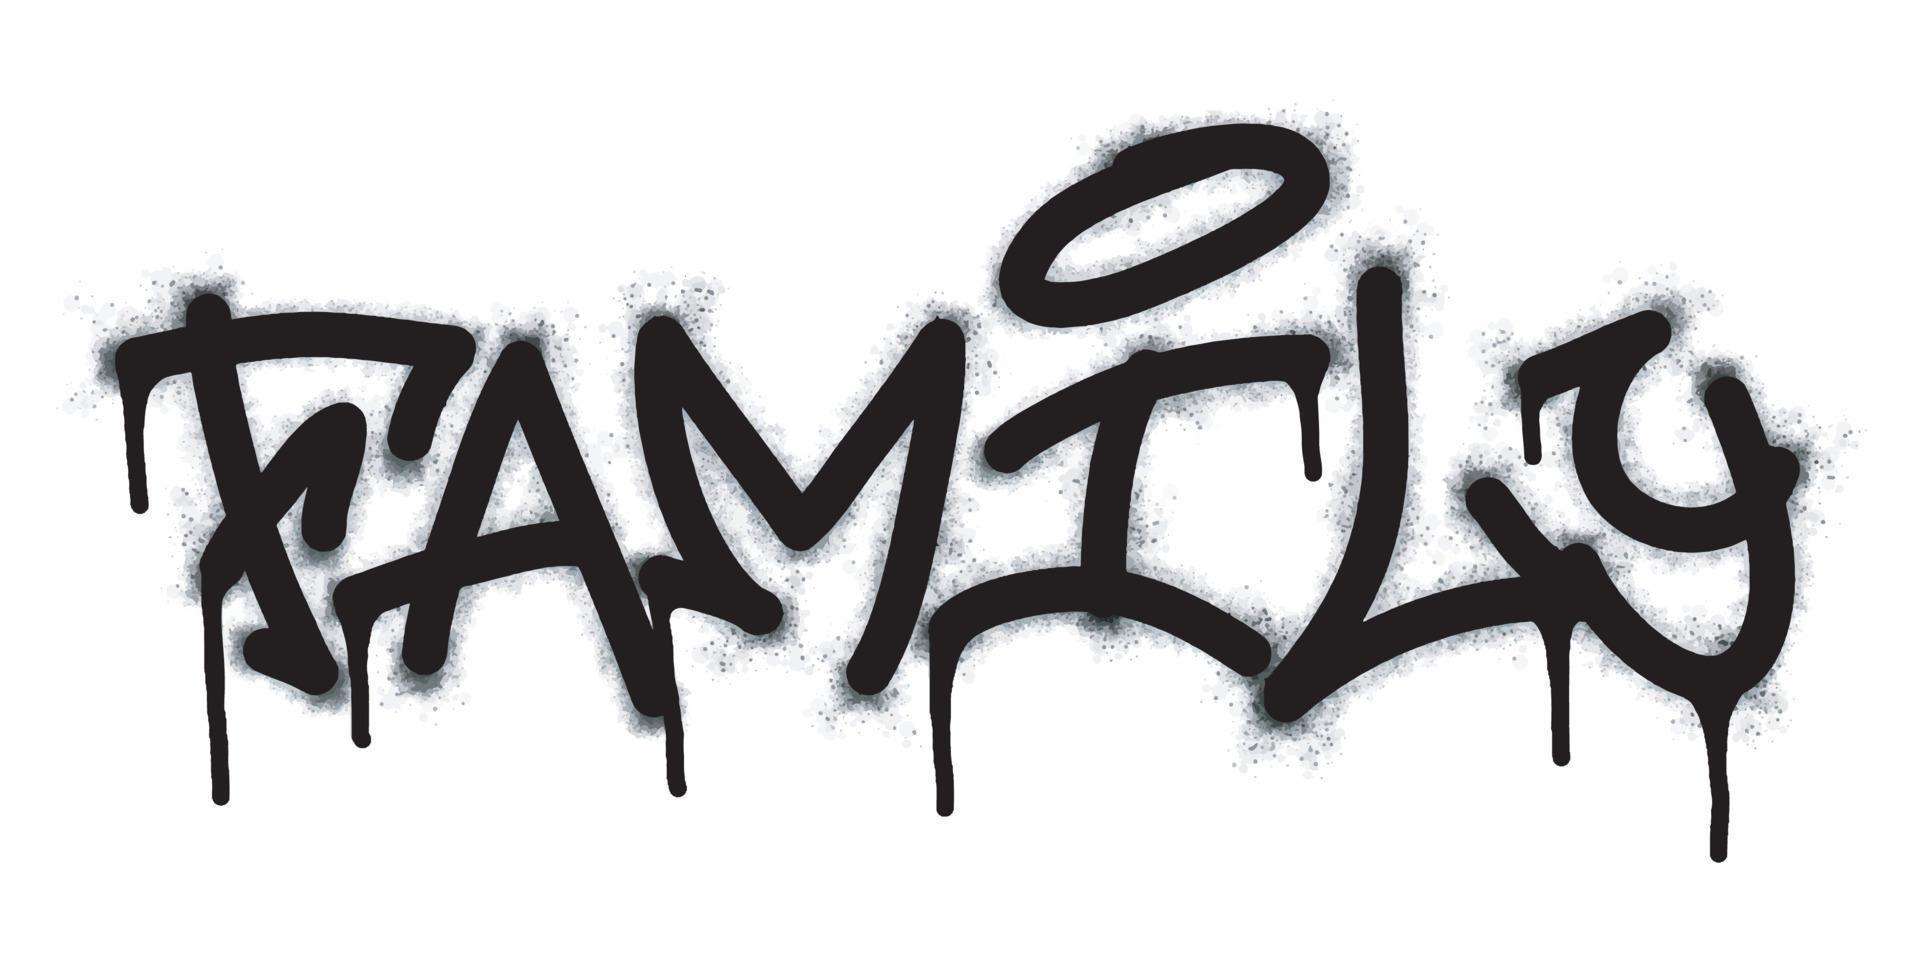 graffiti famiglia parola e simbolo spruzzato nel nero vettore